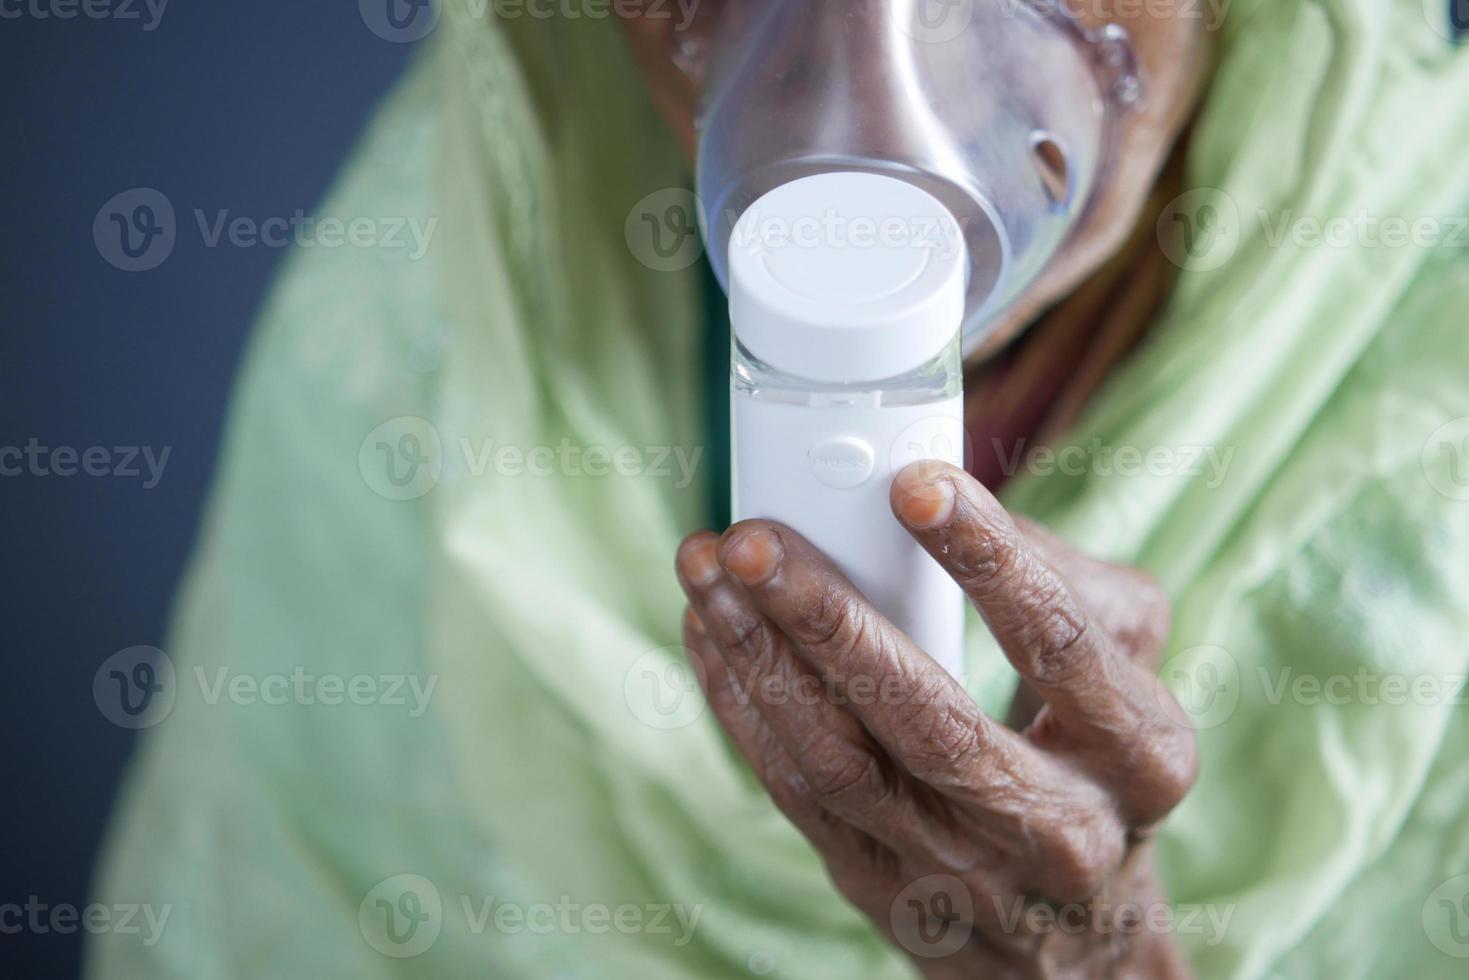 La mano de las mujeres mayores sostiene un nebulizador contra un fondo gris claro foto